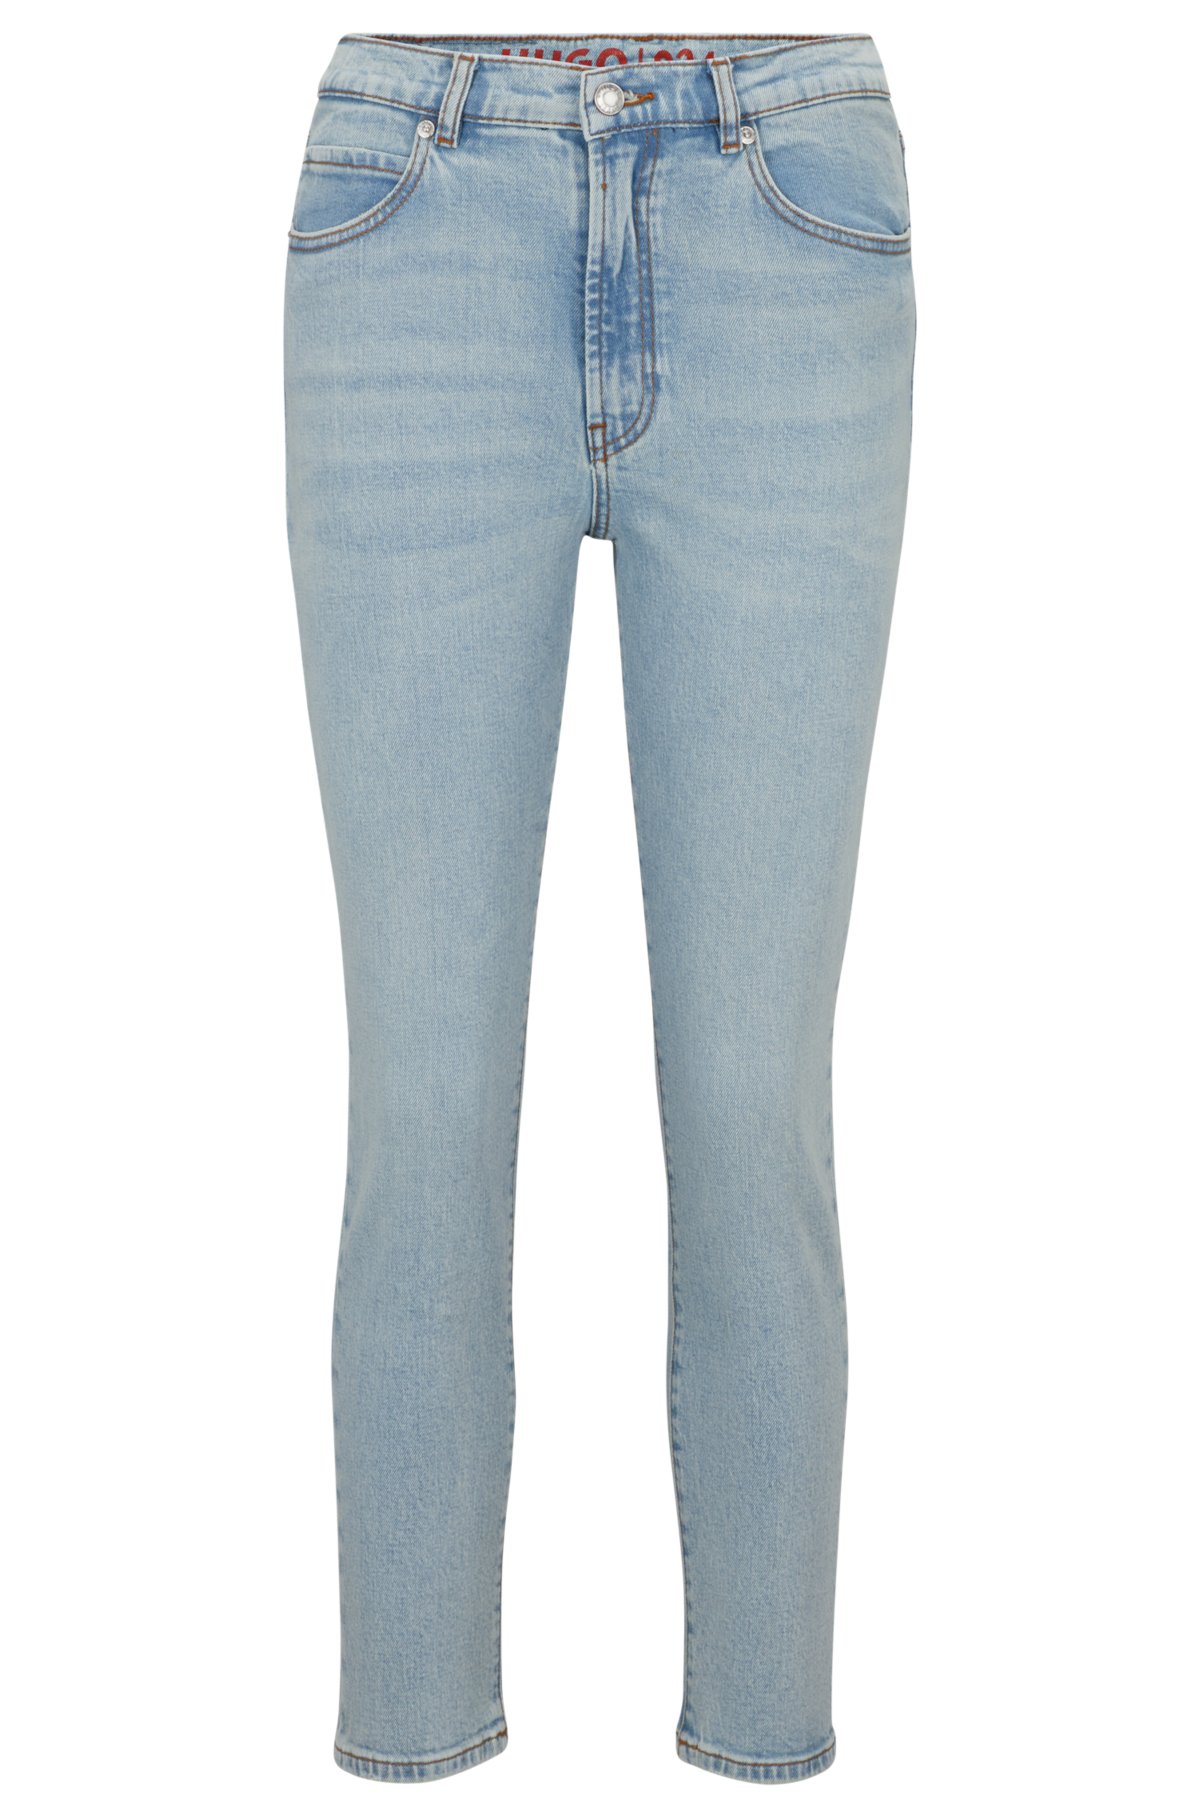 HUGO - Slim-fit jeans in vintage-wash stretch denim